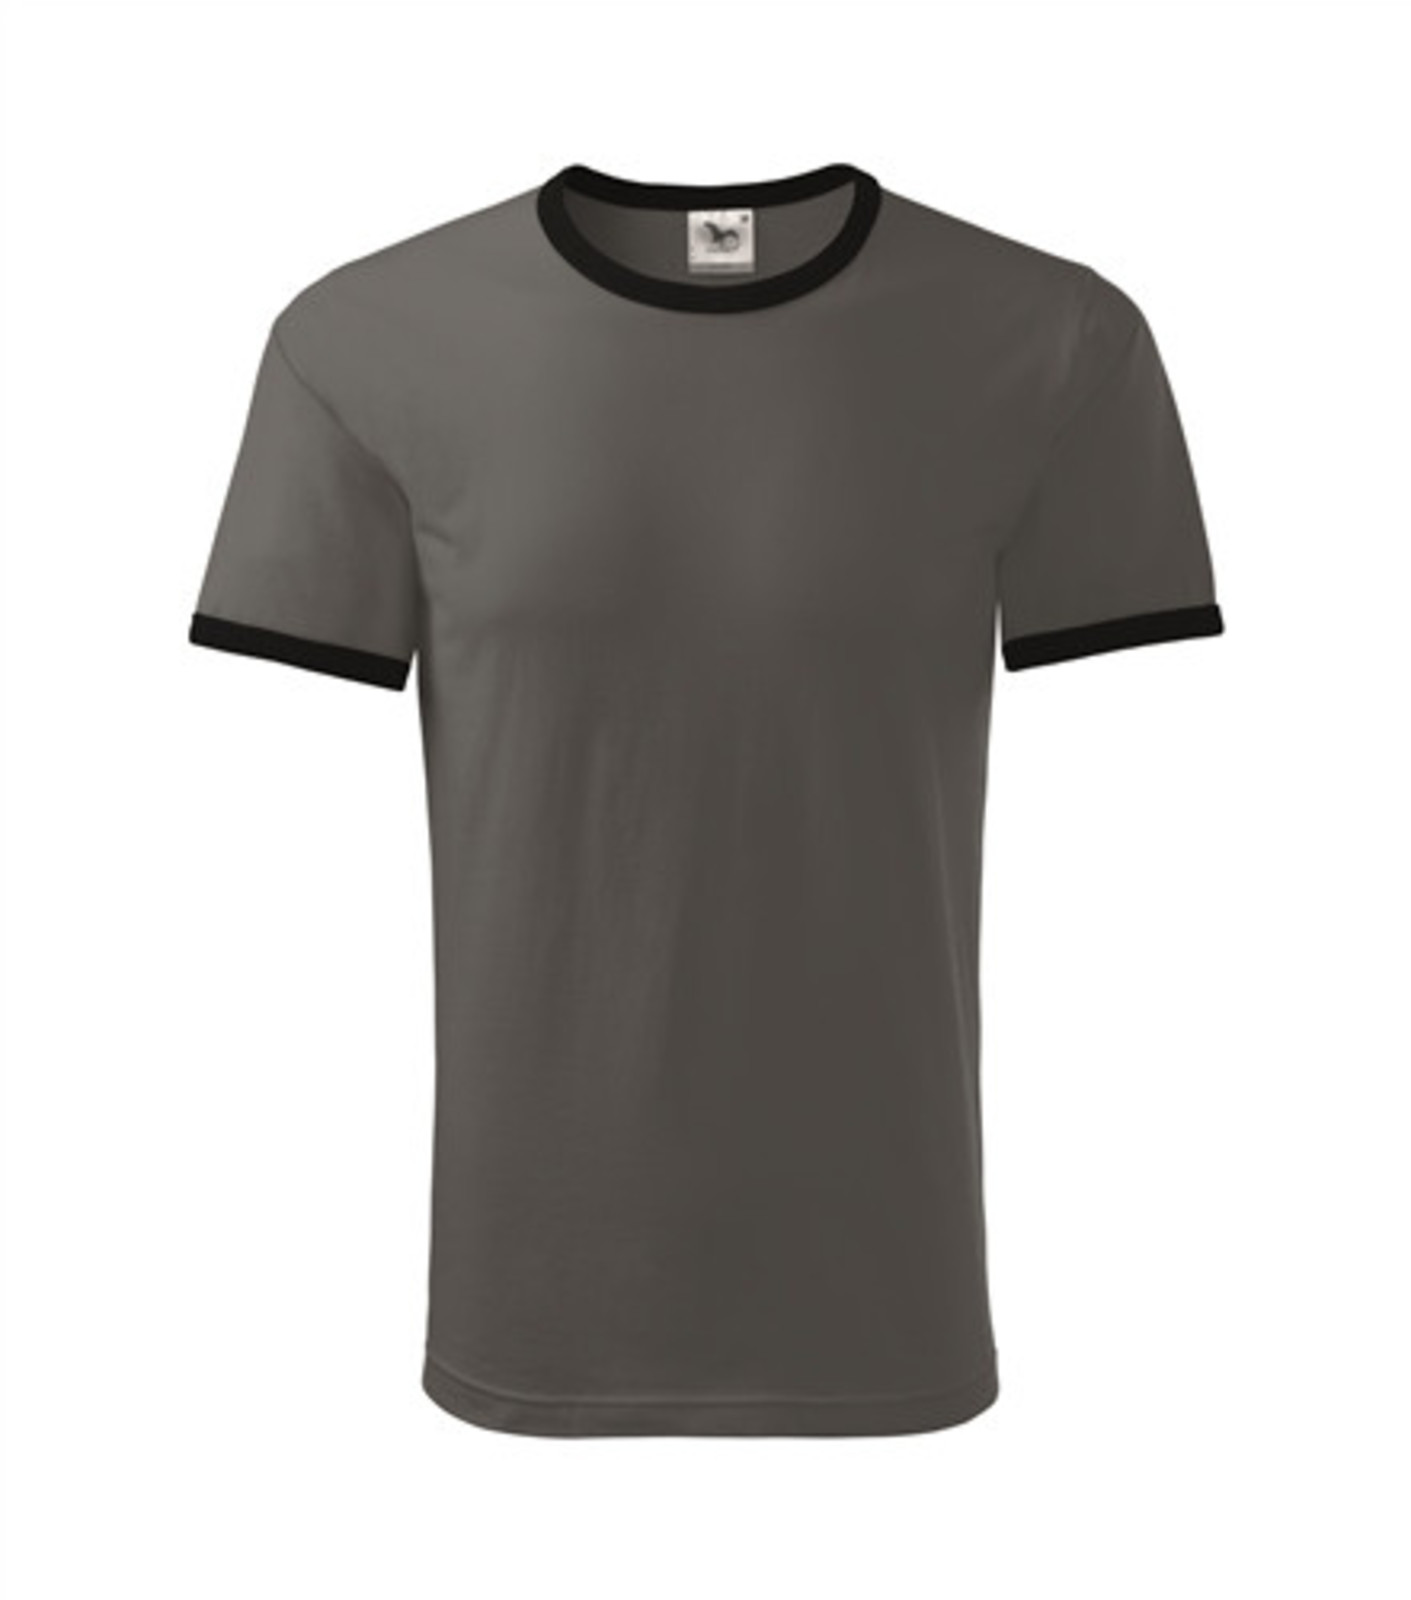 Unisex tričko Adler Infinity 131 - veľkosť: 3XL, farba: bridlica/čierna